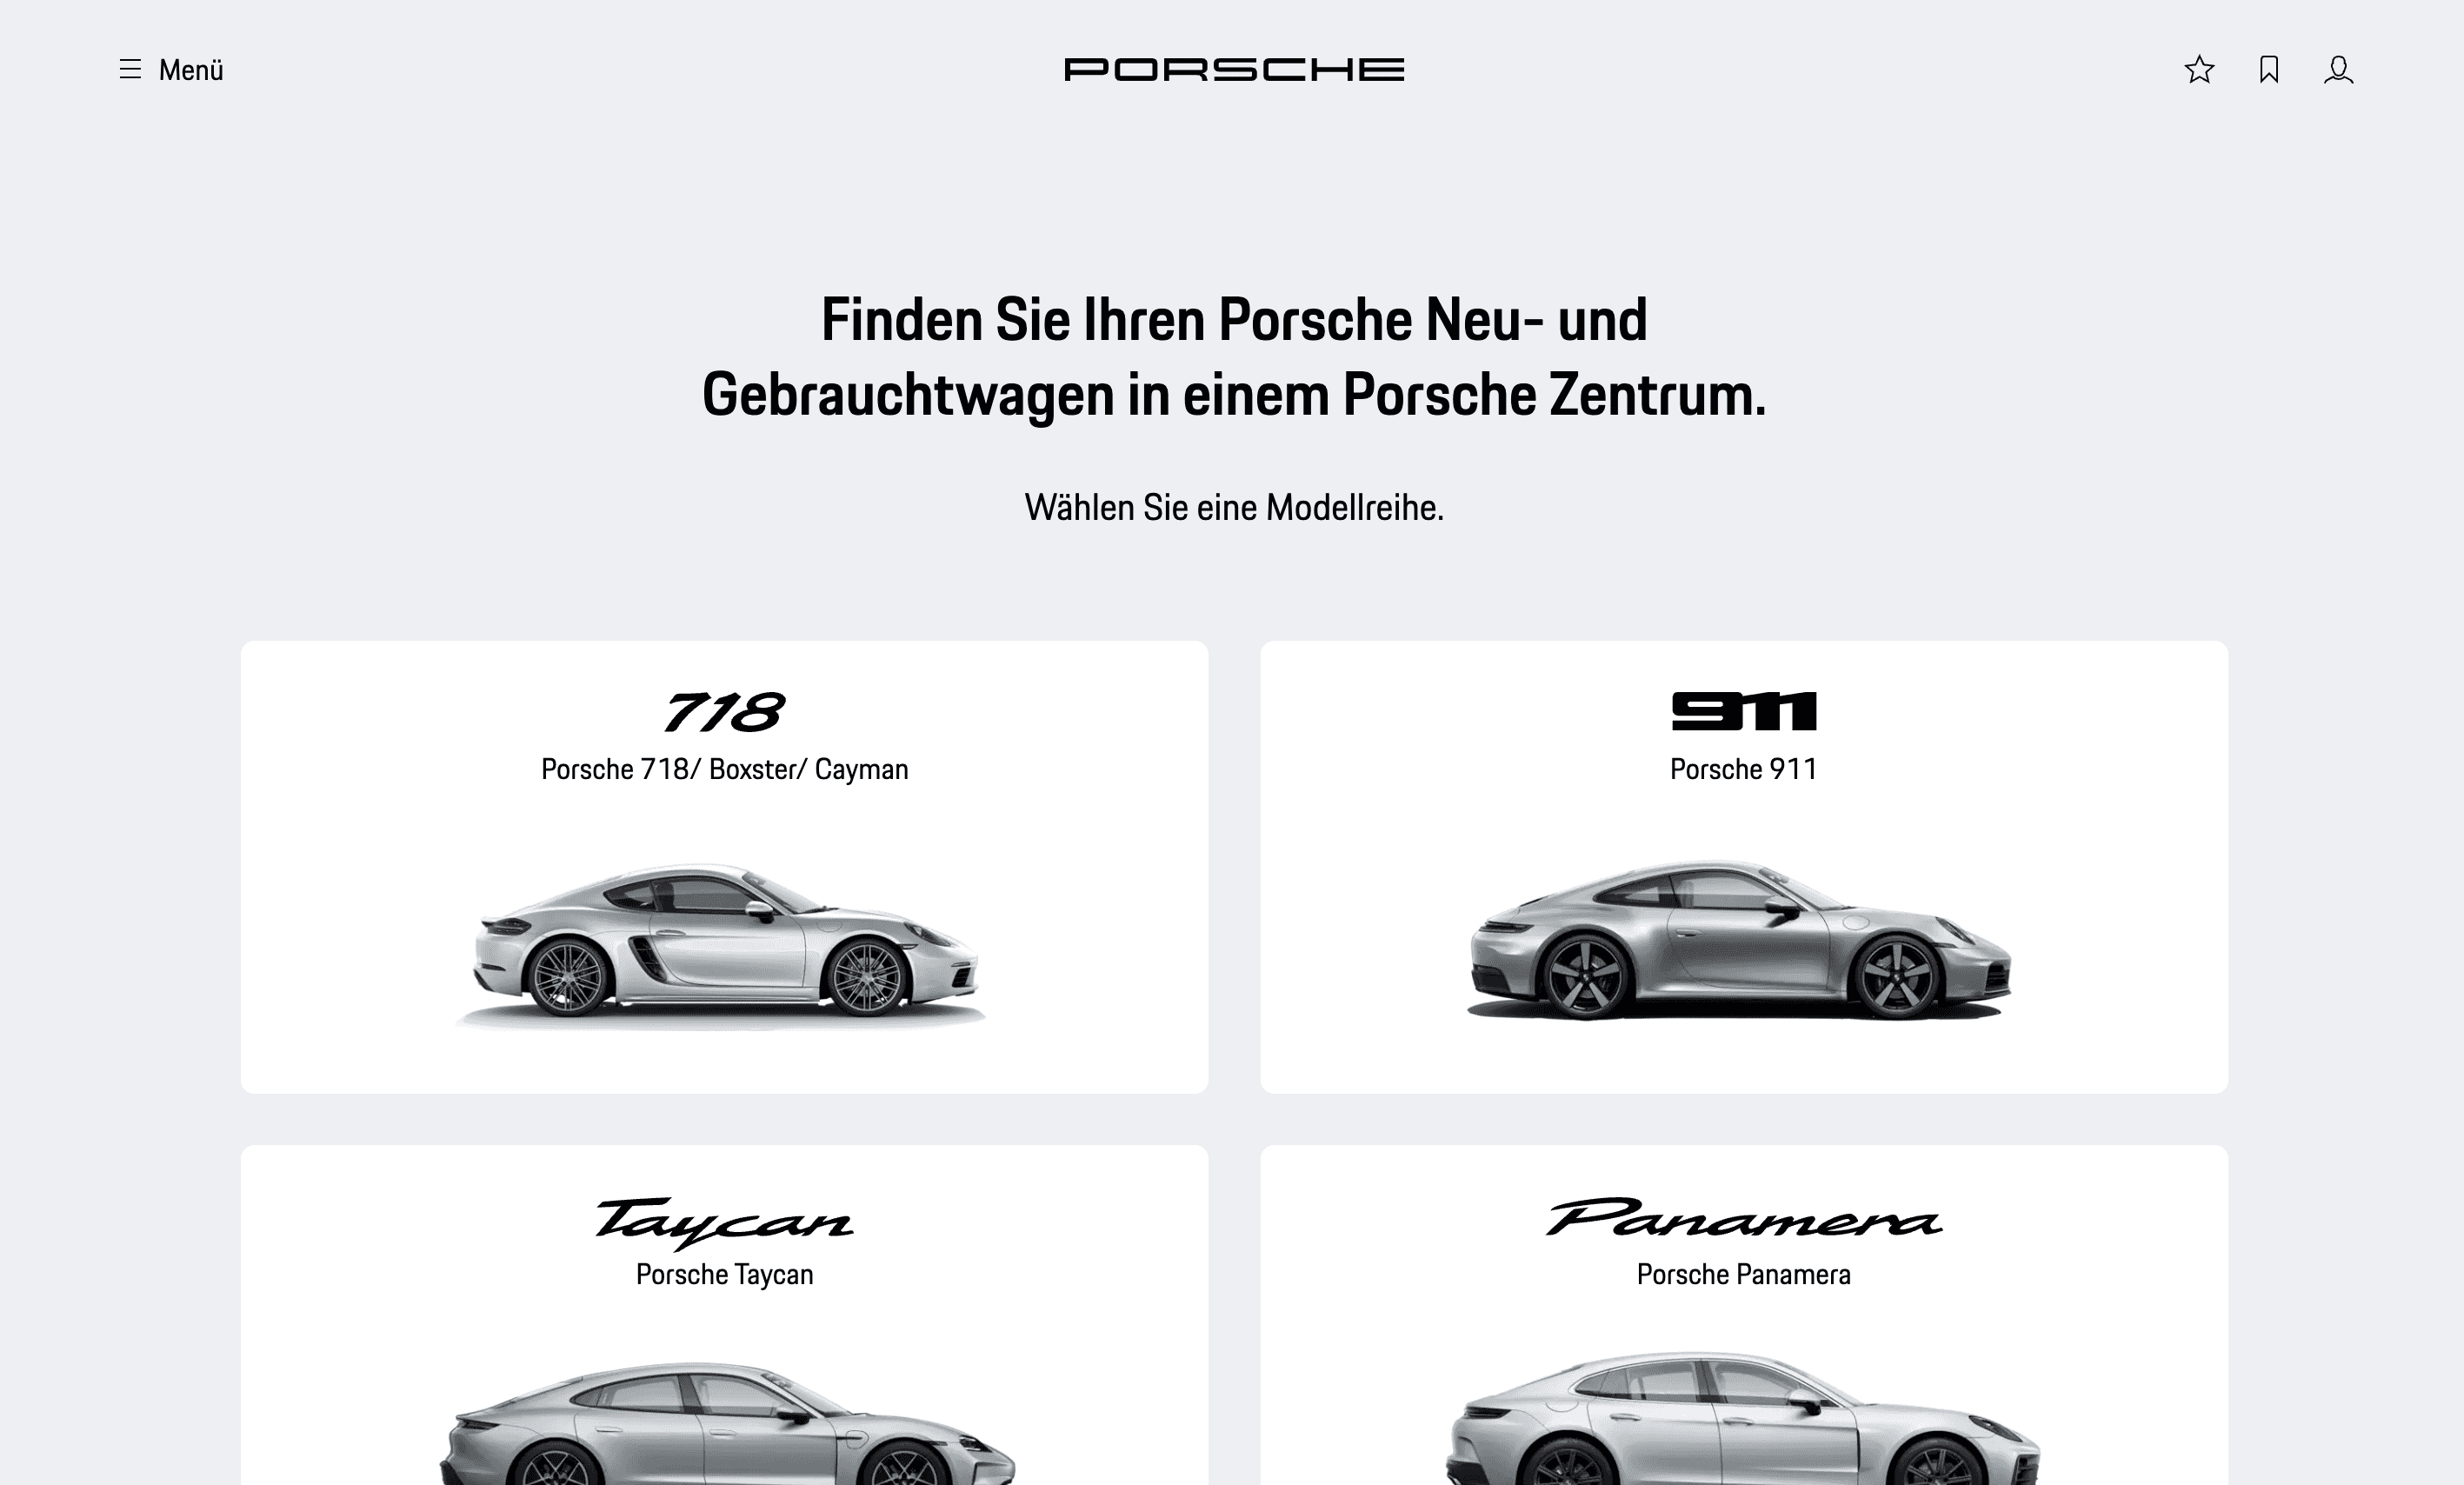 Landing Page of Porsche Finder Platform